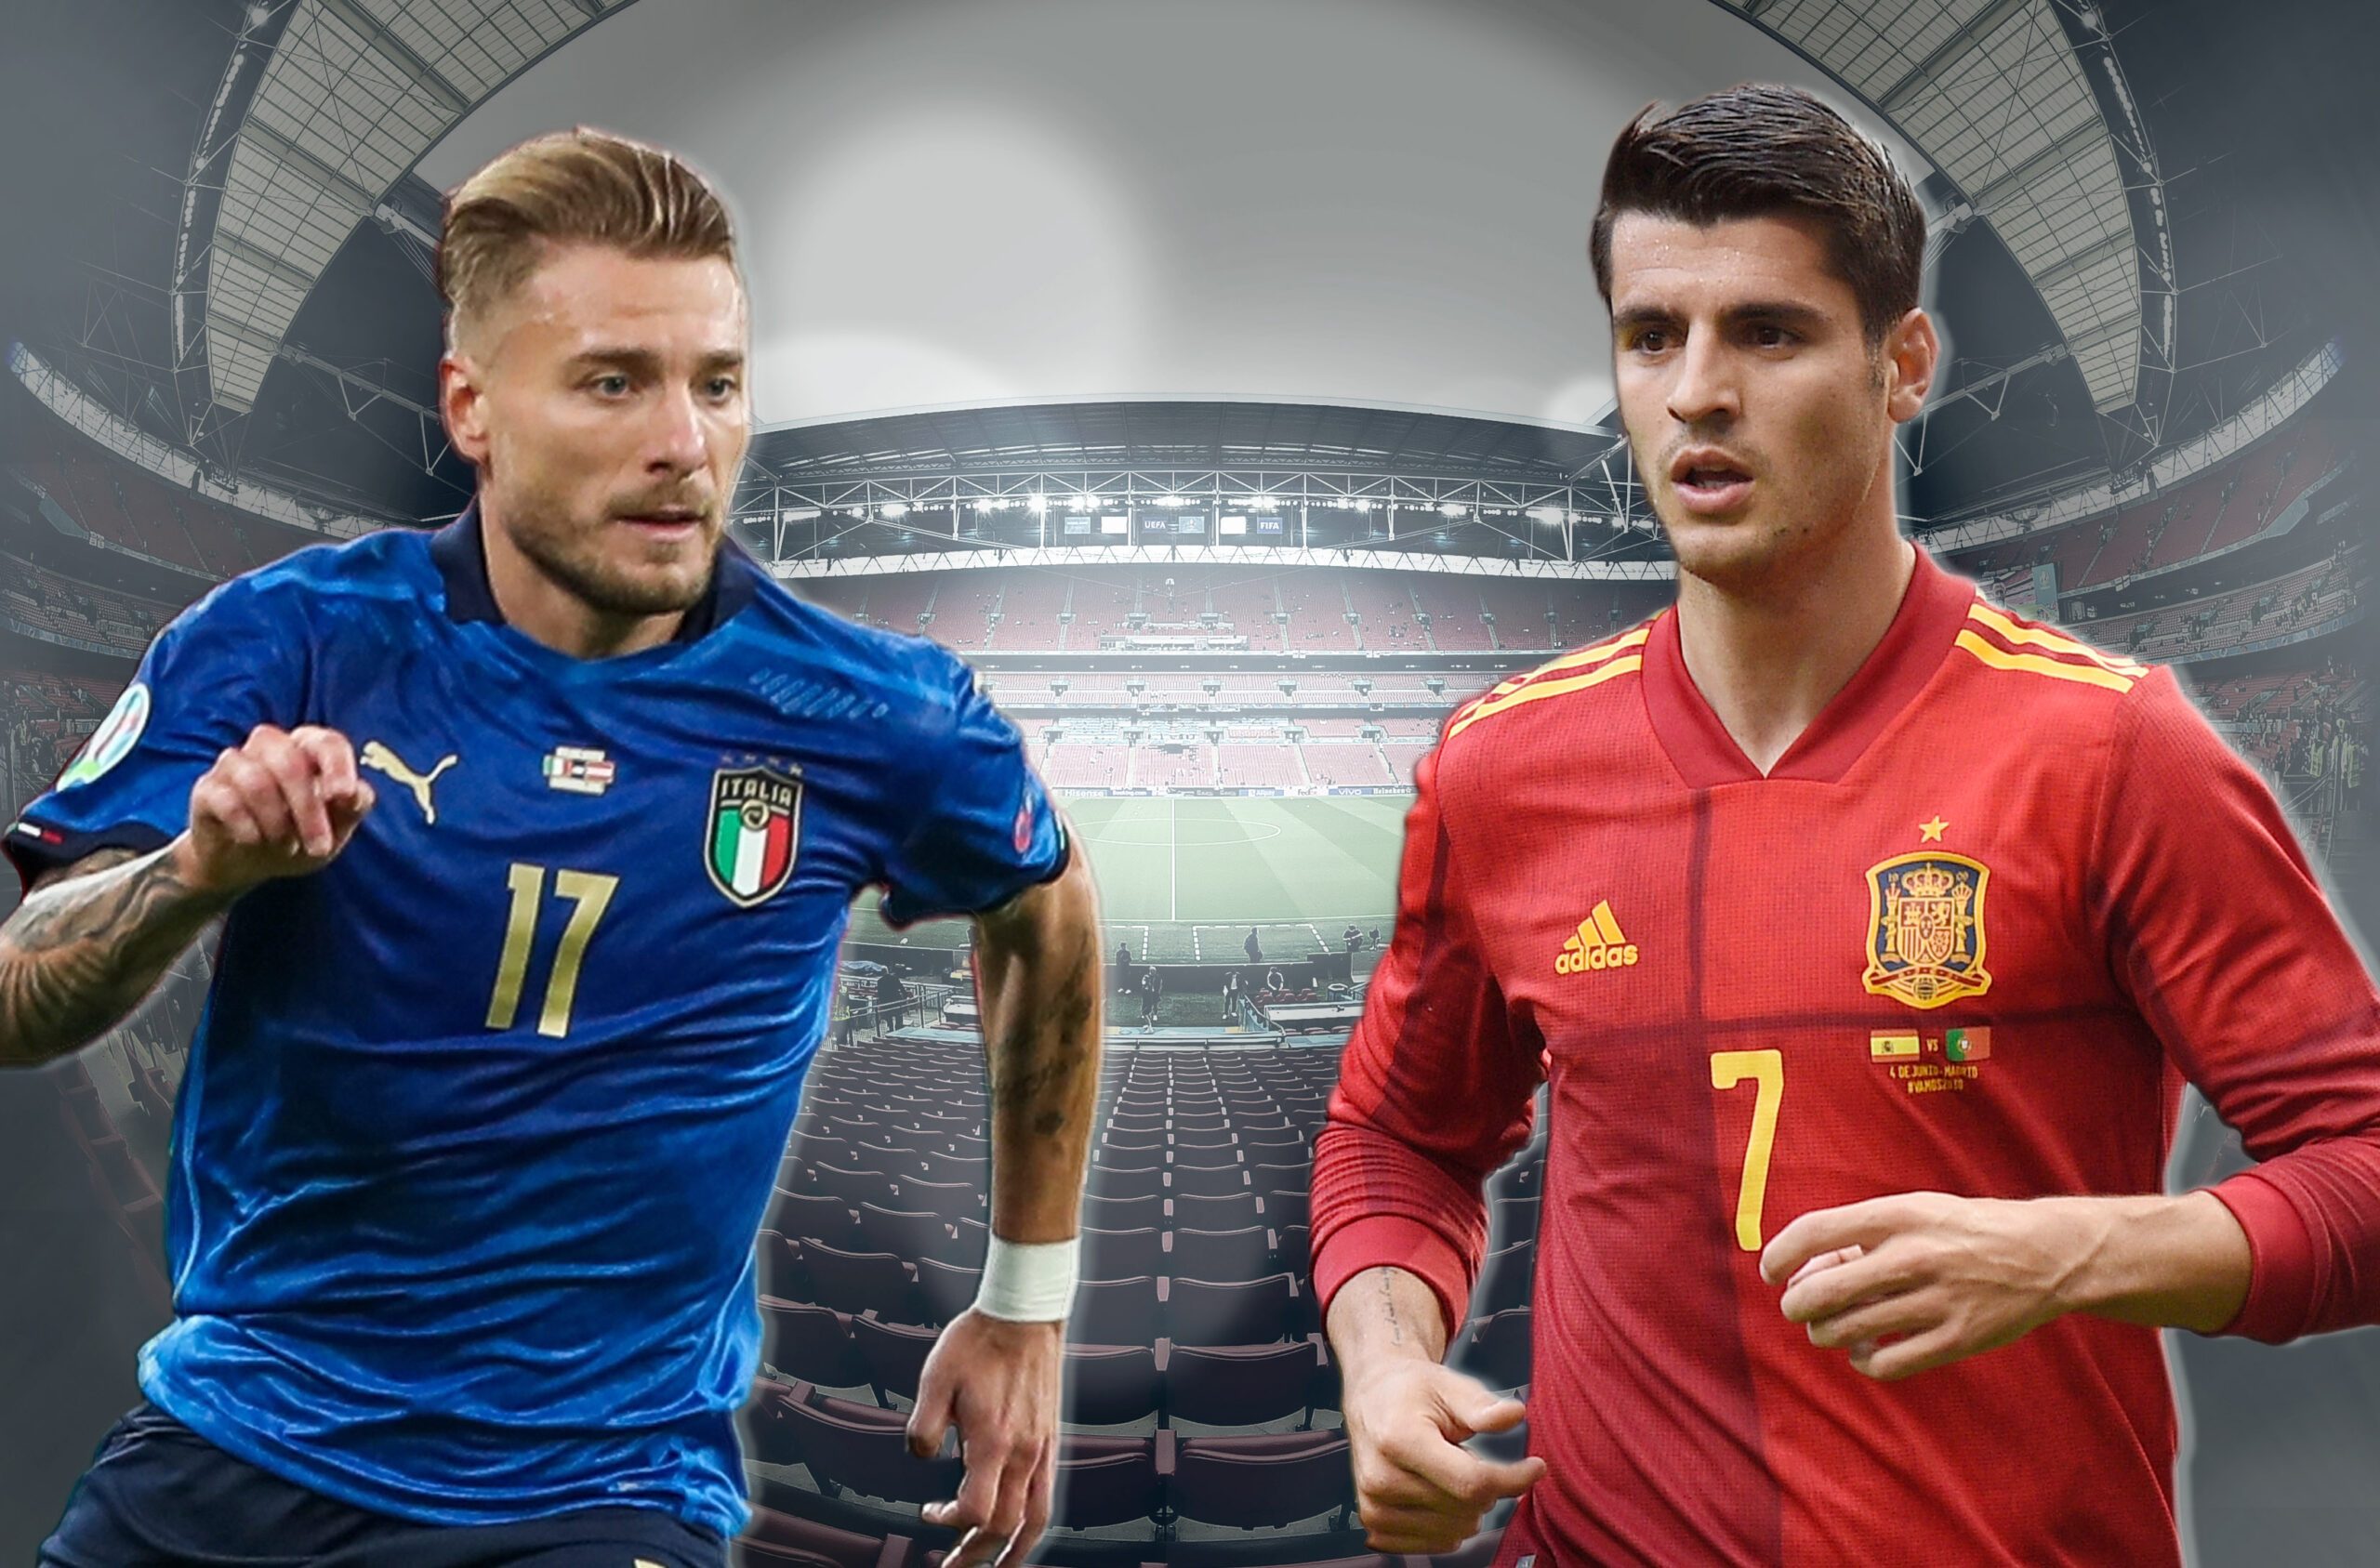 Italien England Live - EM 2021: Der Halbfinal England - Dänemark live - Das spiel zwischen ...